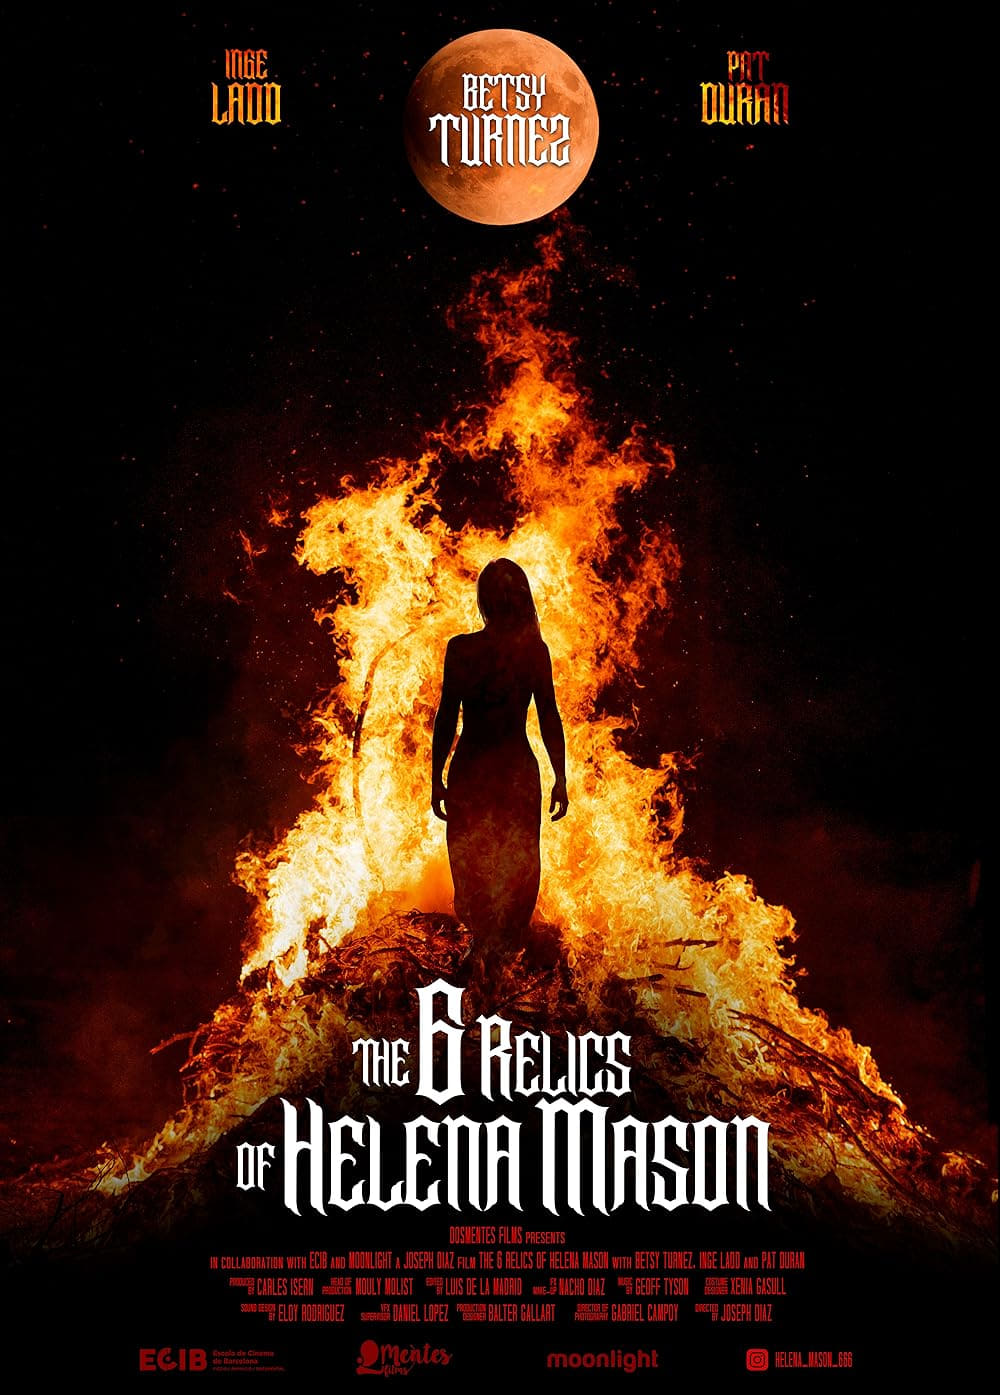 The 6 Relics of Helena Mason